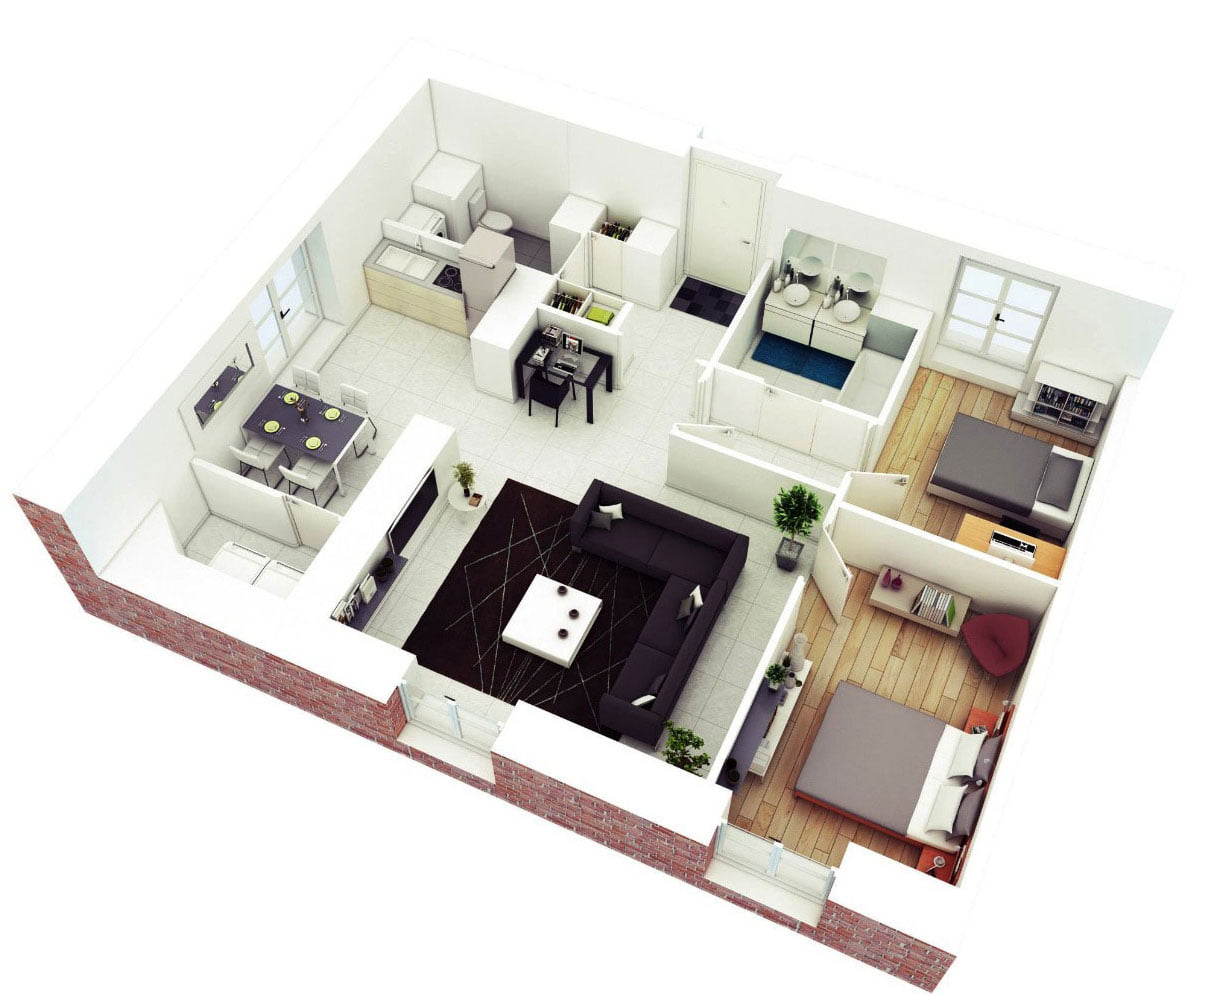 Thiết kế căn hộ chung cư 70m2 2 phòng ngủ  anh Thái